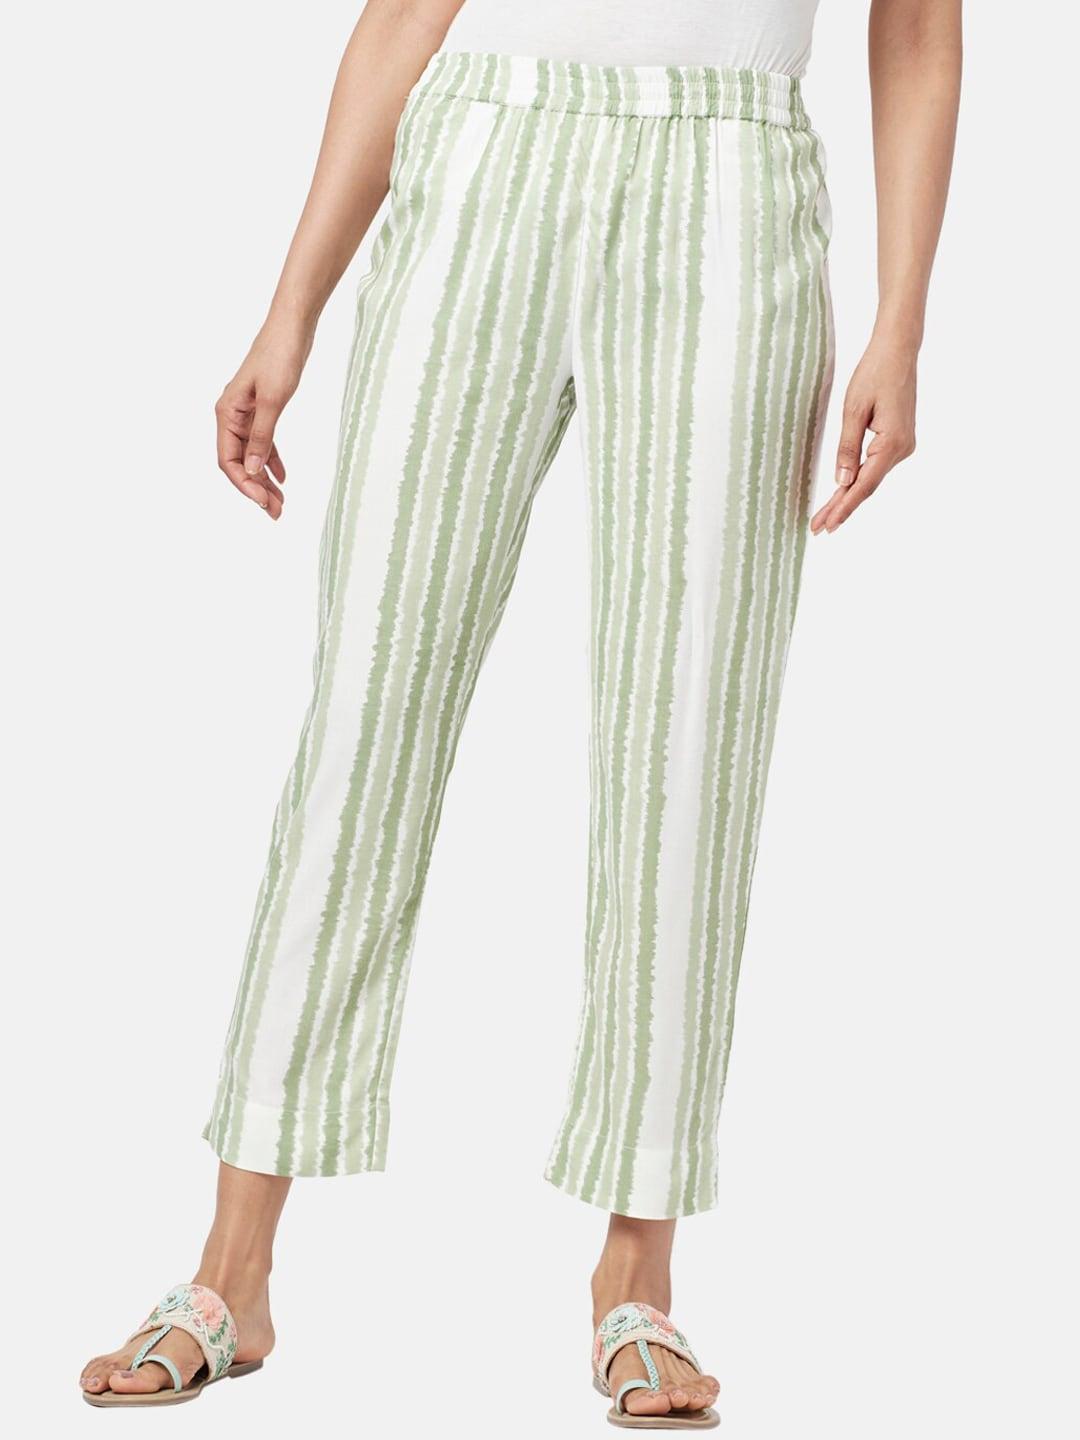 rangmanch-by-pantaloons-women-striped-trousers